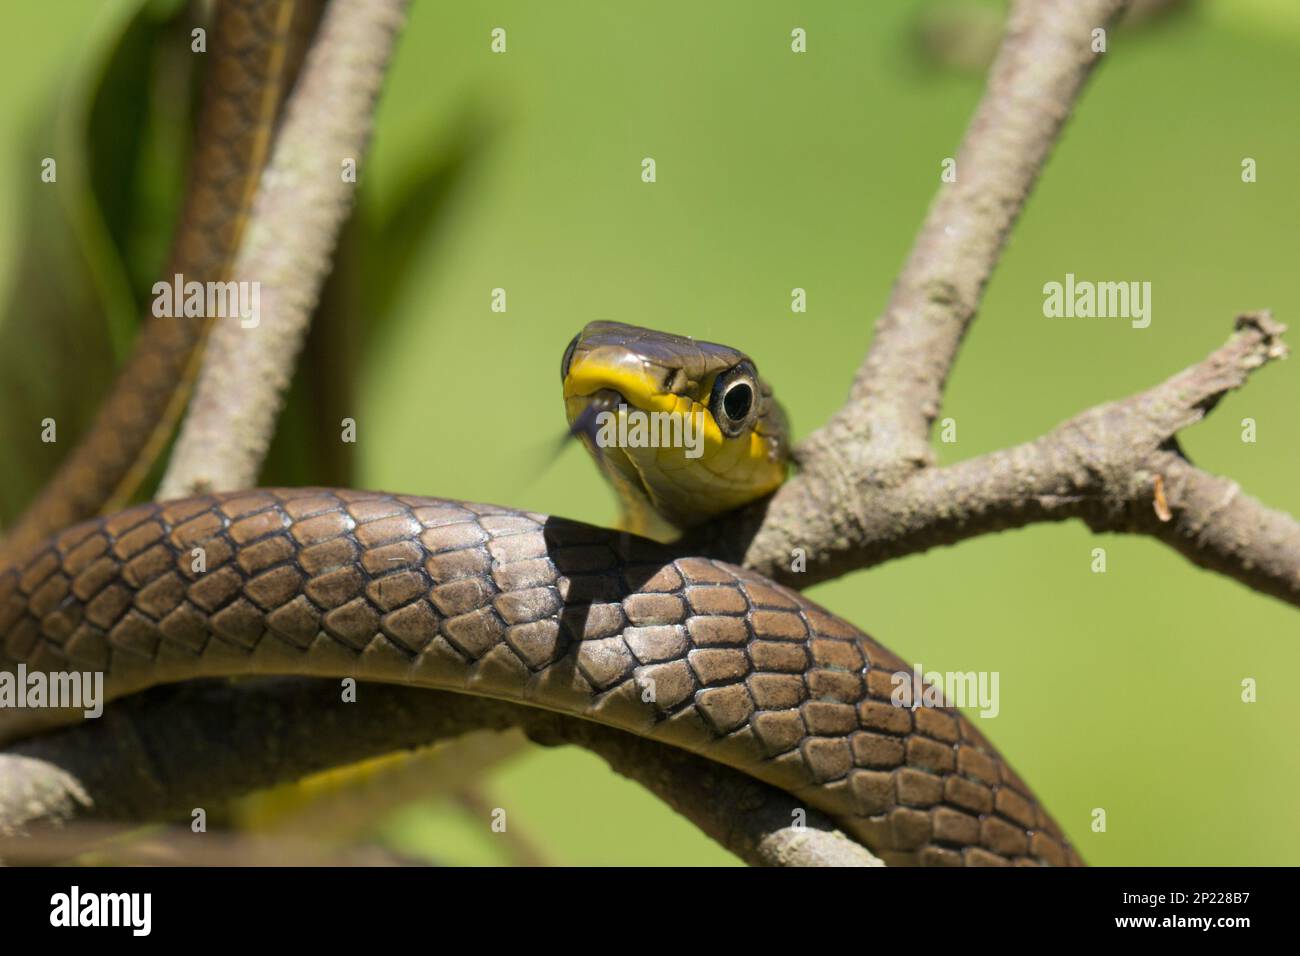 Juvinile verde de la serpiente del árbol con la lengua hacia fuera que muestra una coloración marrón clara.Dendrelaphis punctulata Bundaberg Queensland Australia Foto de stock